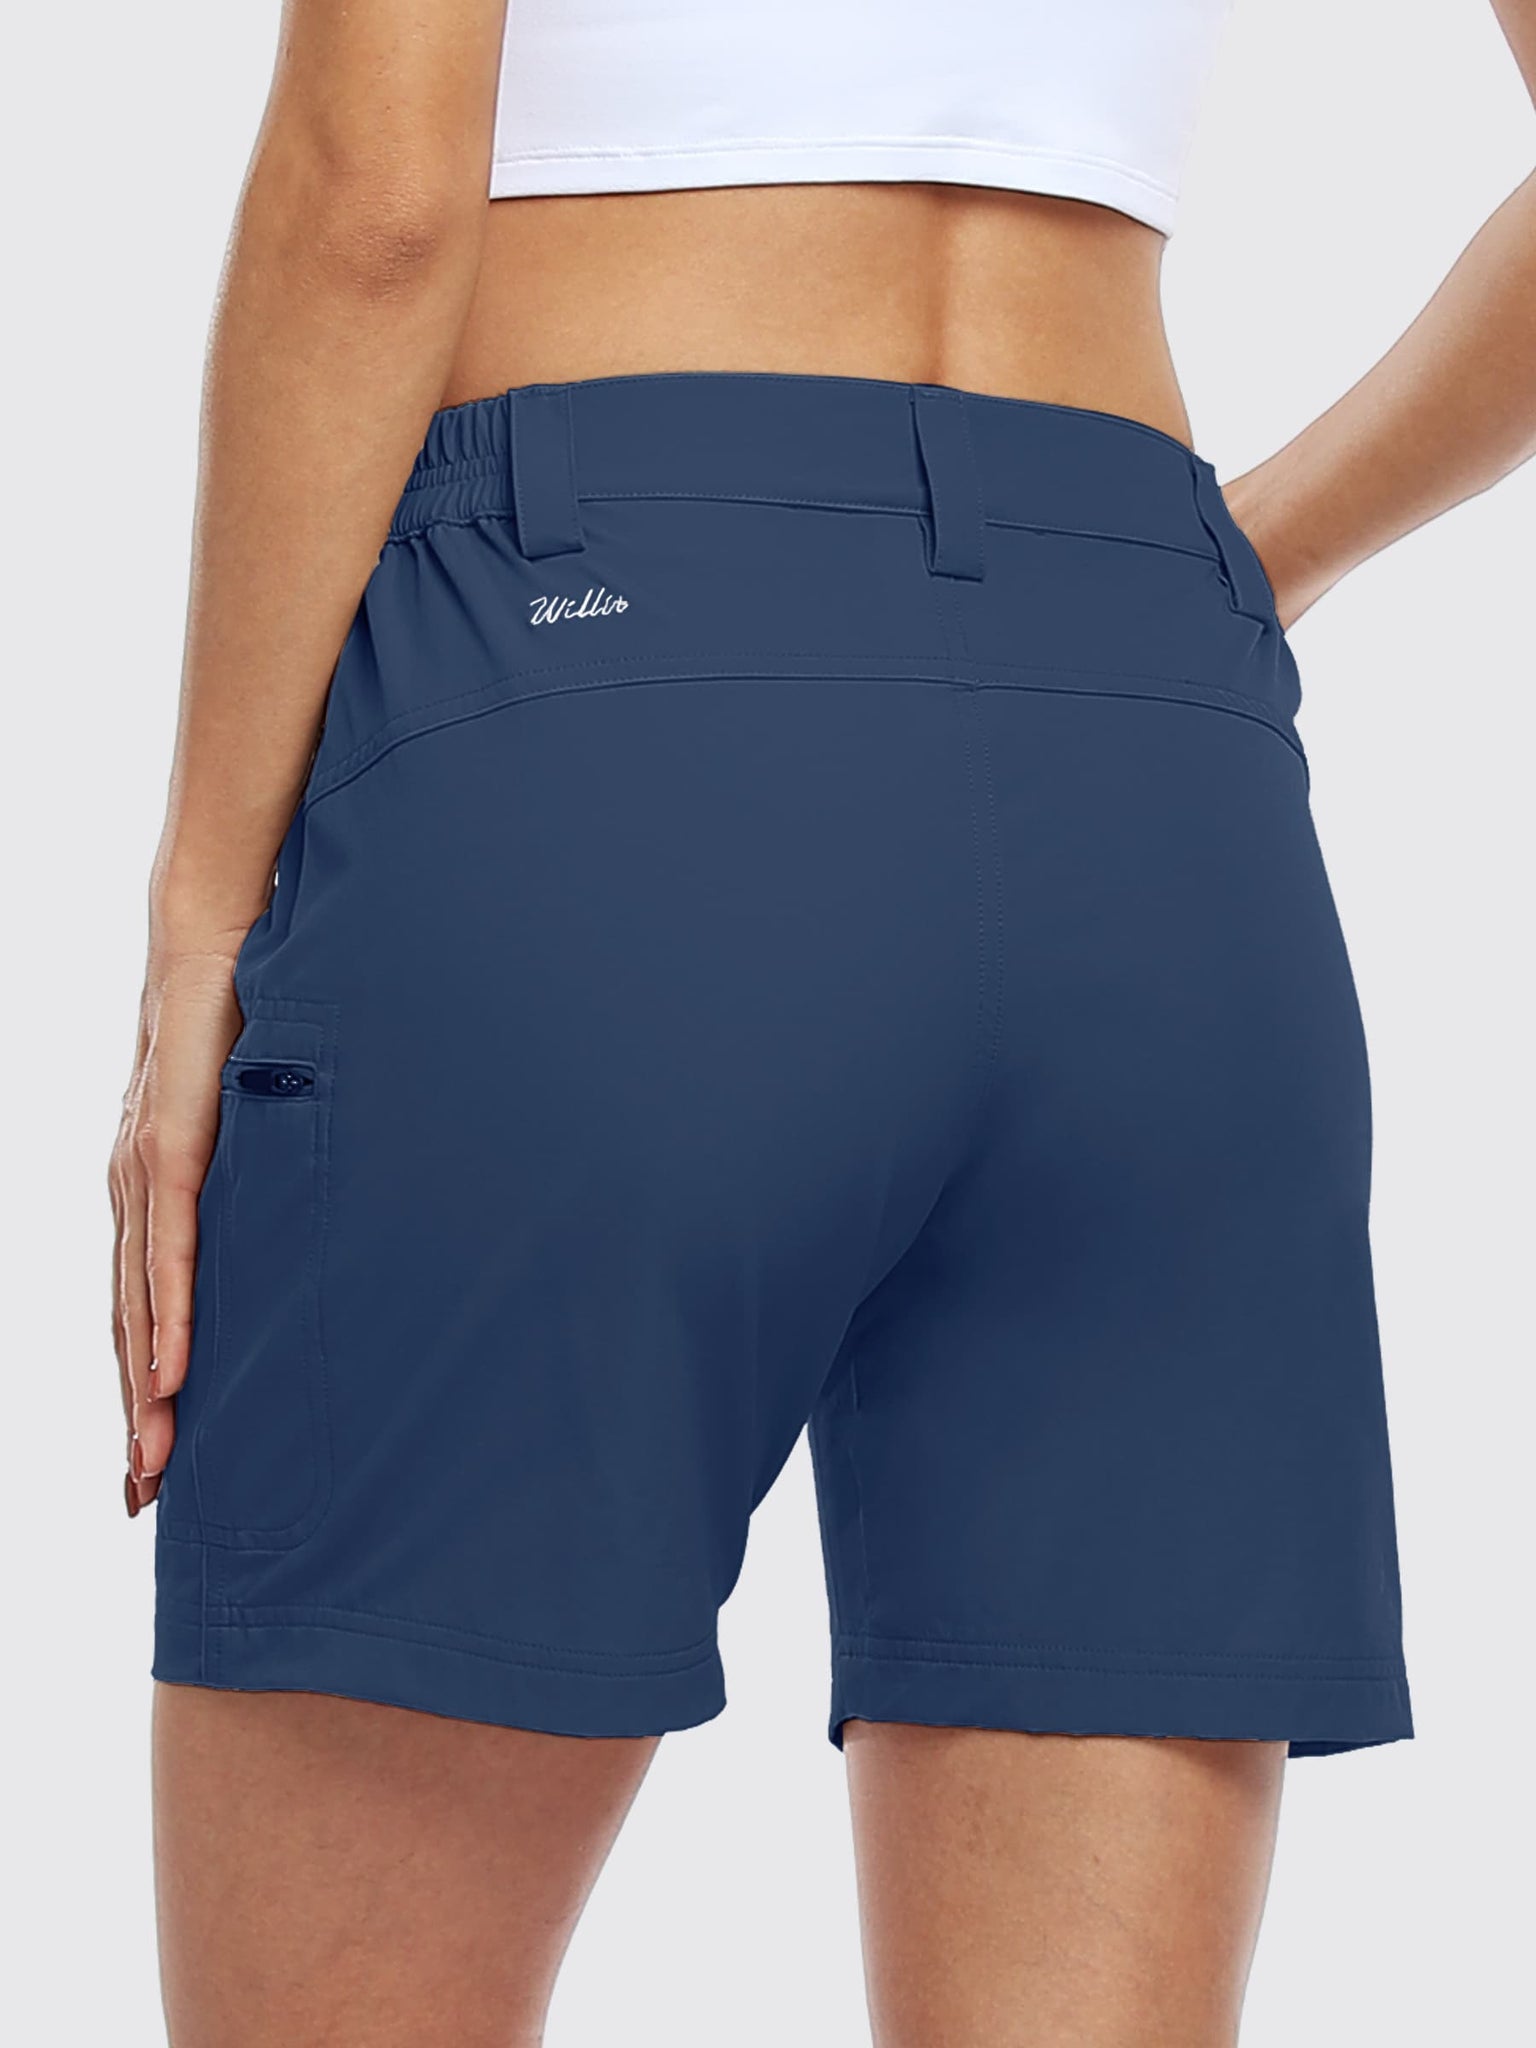 Willit Women's Outdoor Cargo Shorts 6 Inseam_Navy_model5